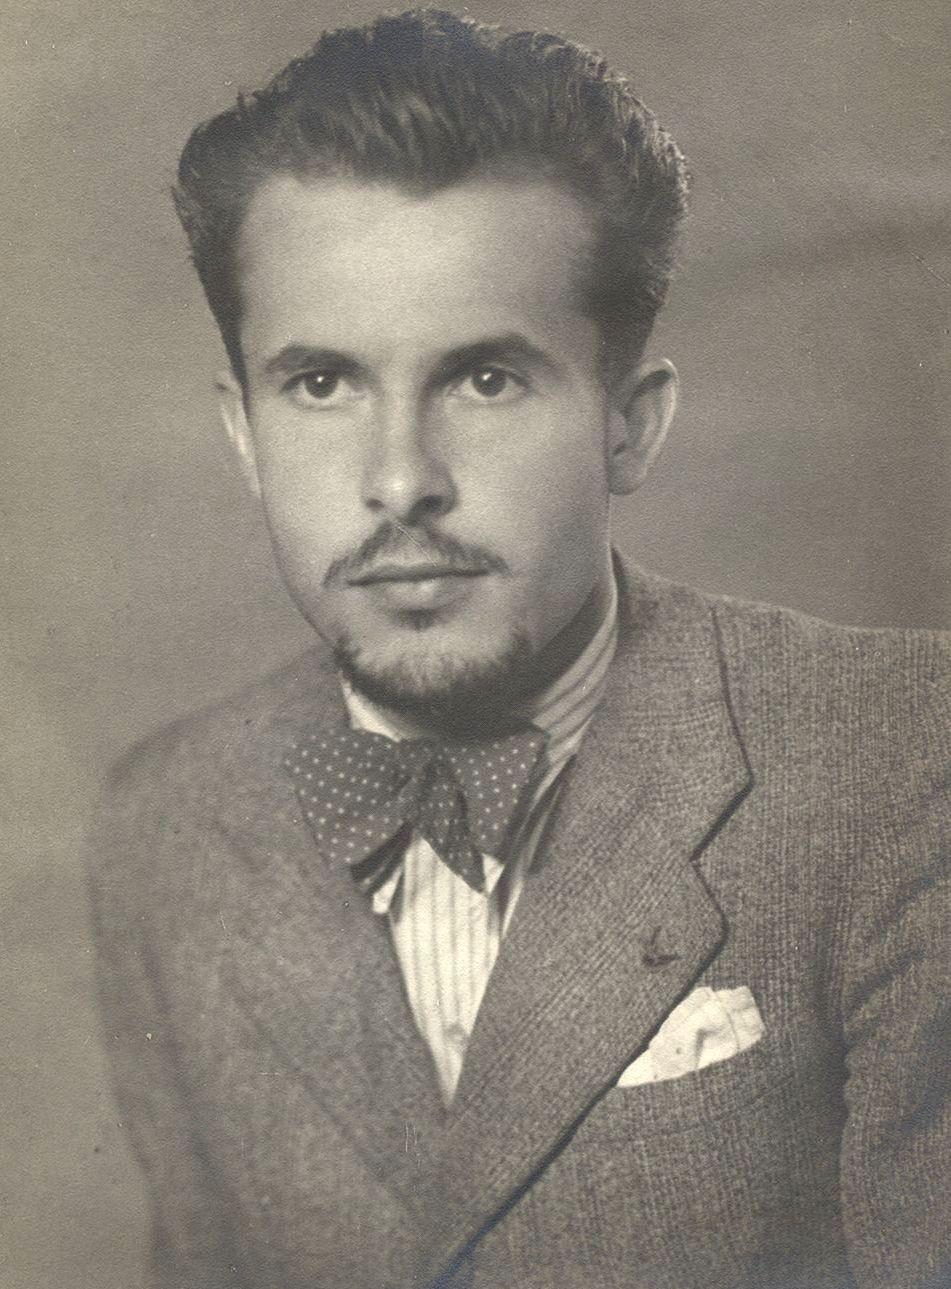 1942. Portré. (Kozma Márton felvétele.)